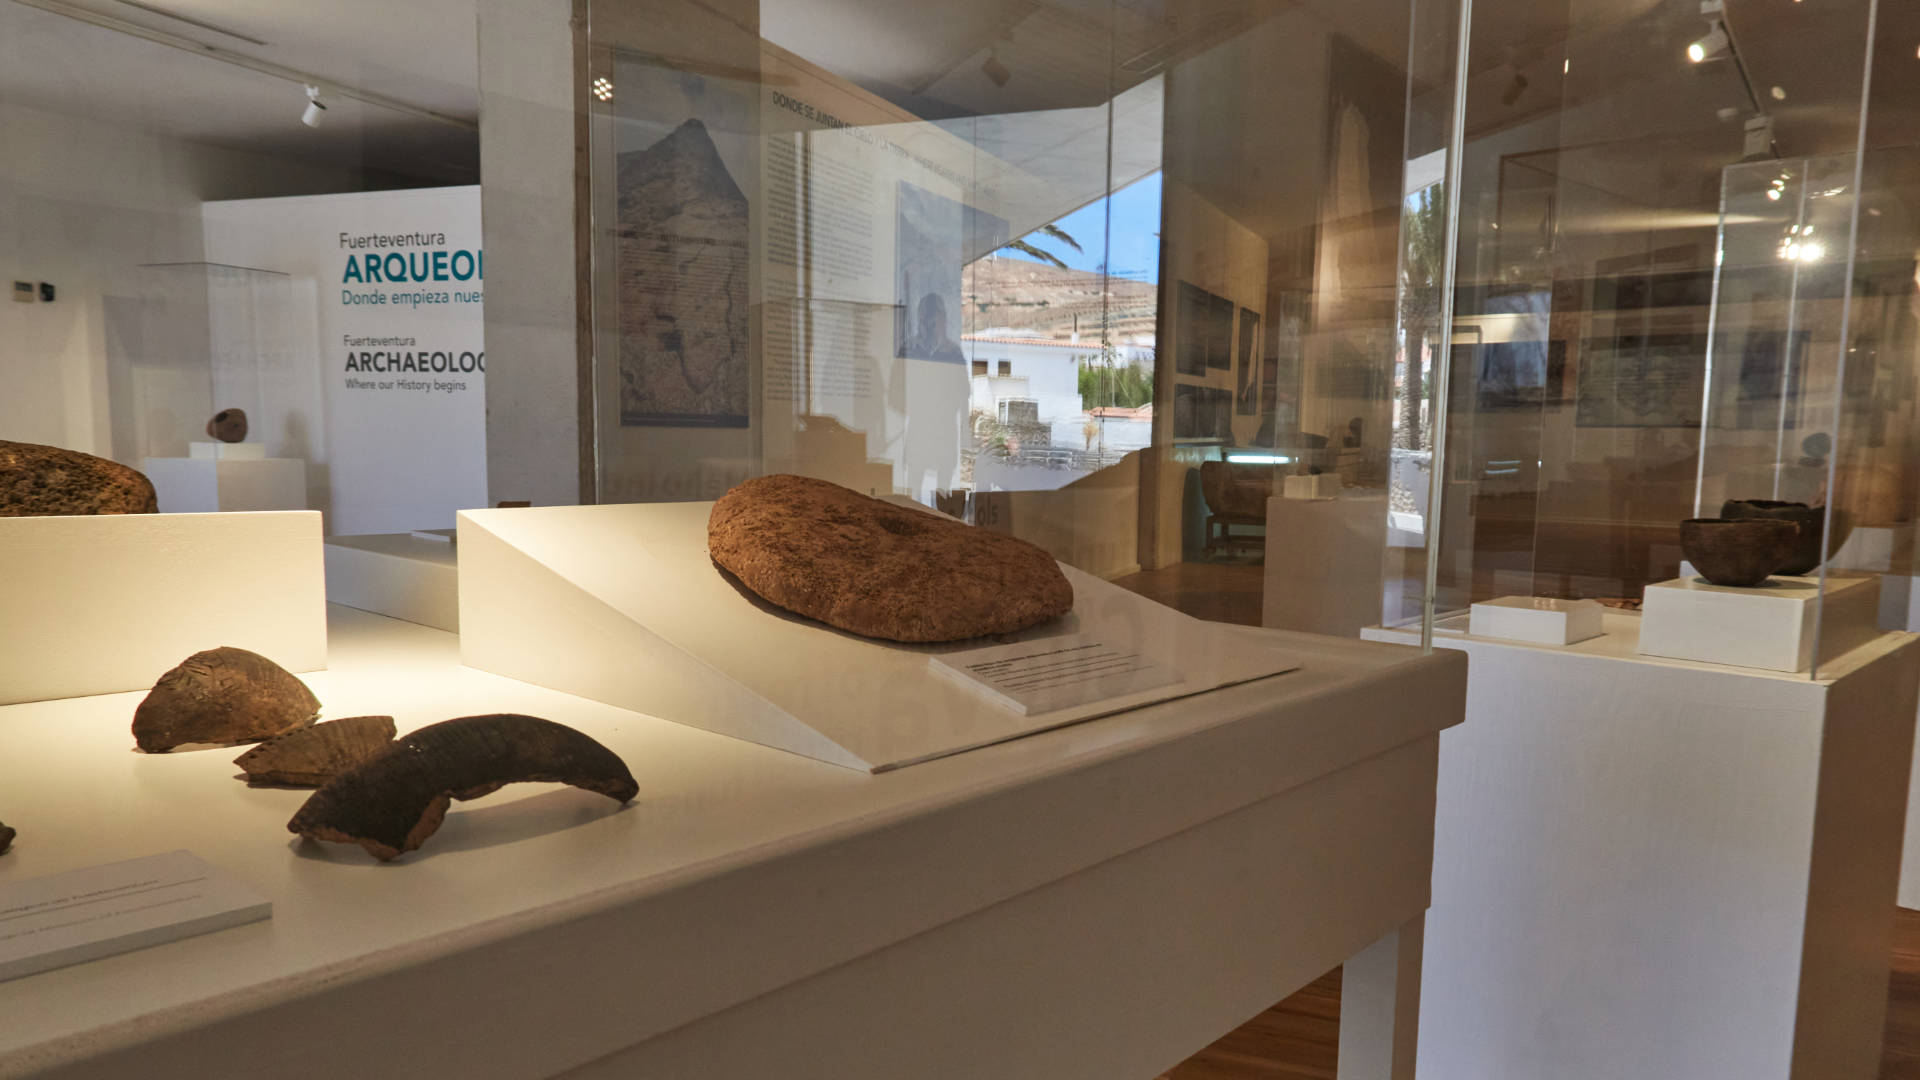 Museo Arqueológico Insular in Betancuria Fuerteventura.